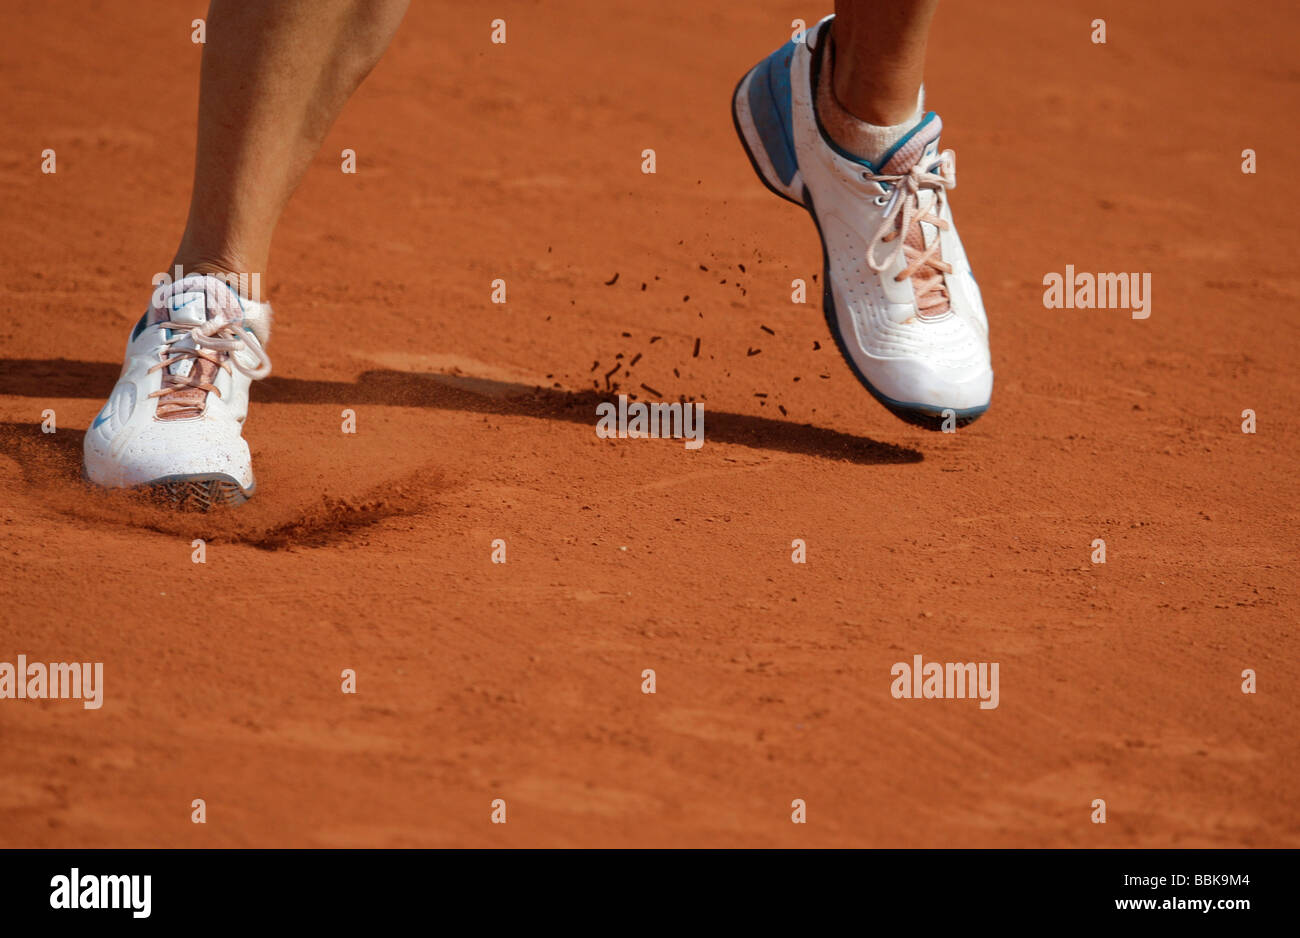 Giocatore di Tennis Maria Sharapova i piedi nelle sue scarpe personalizzate  Foto stock - Alamy